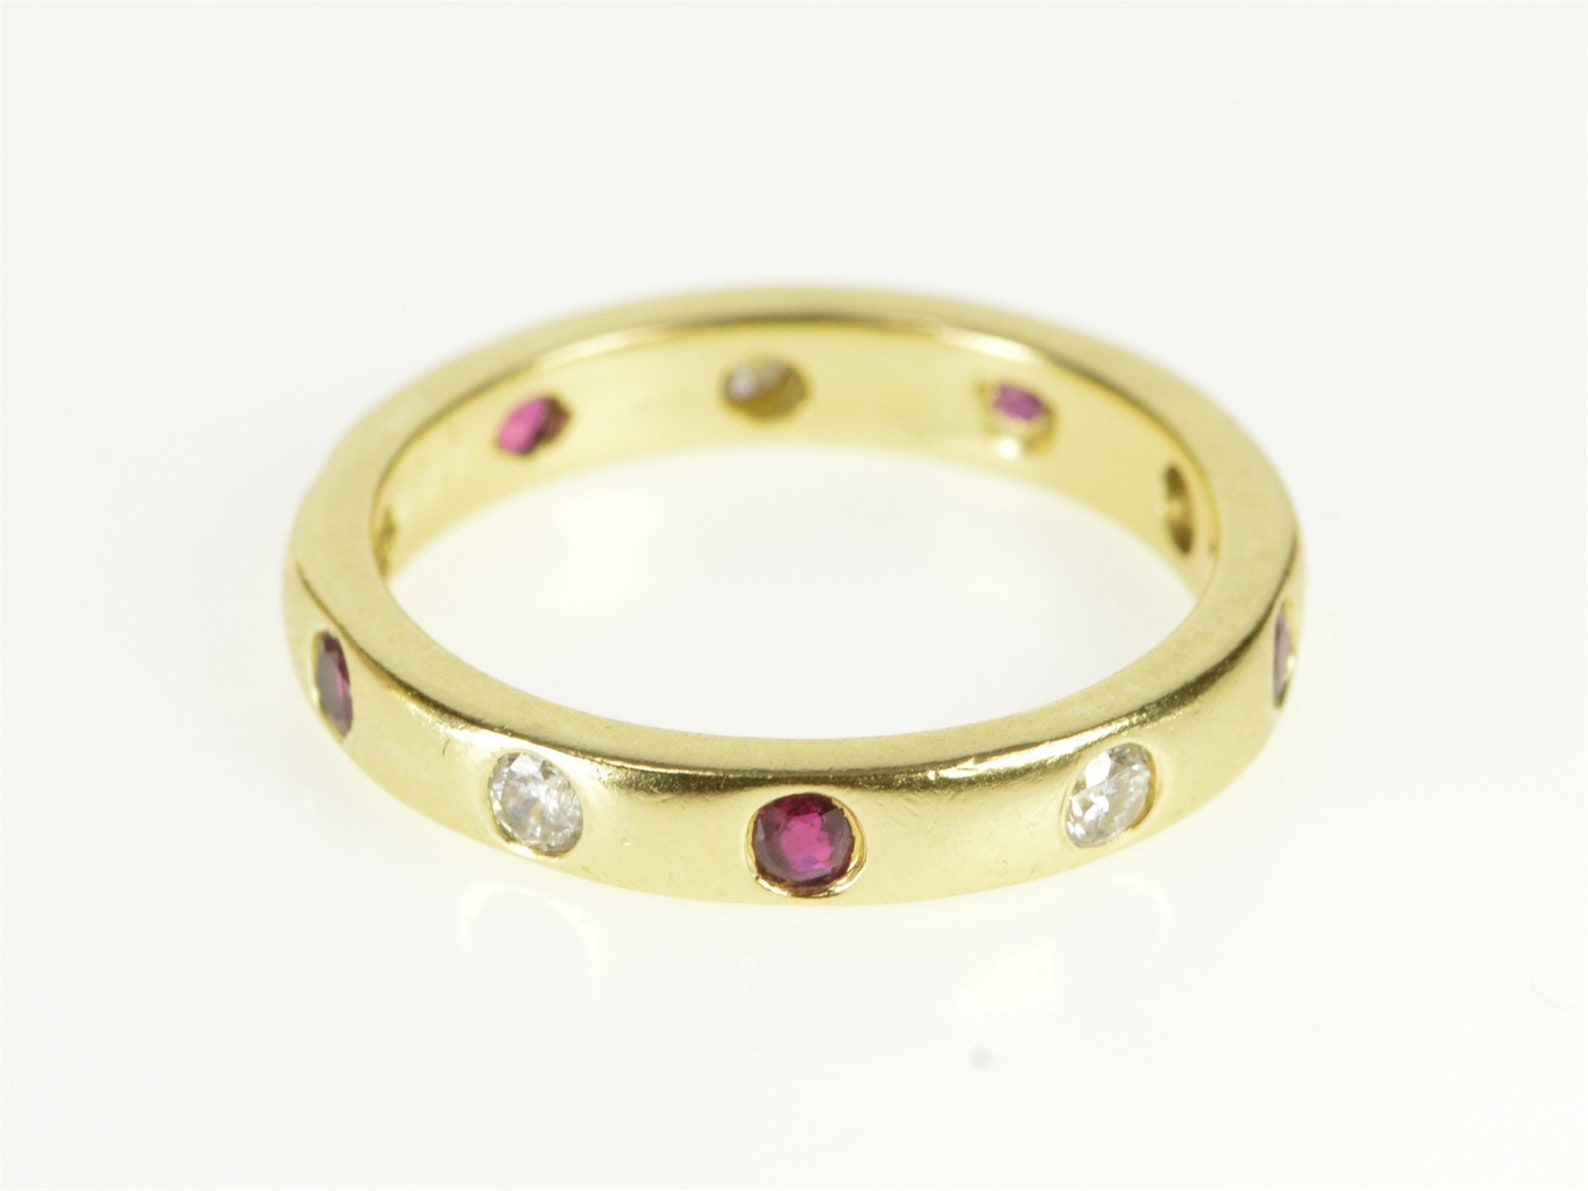 18K 3.2mm Ruby Diamond Flush Inset Wedding Band Ring Size 5.75 | Etsy